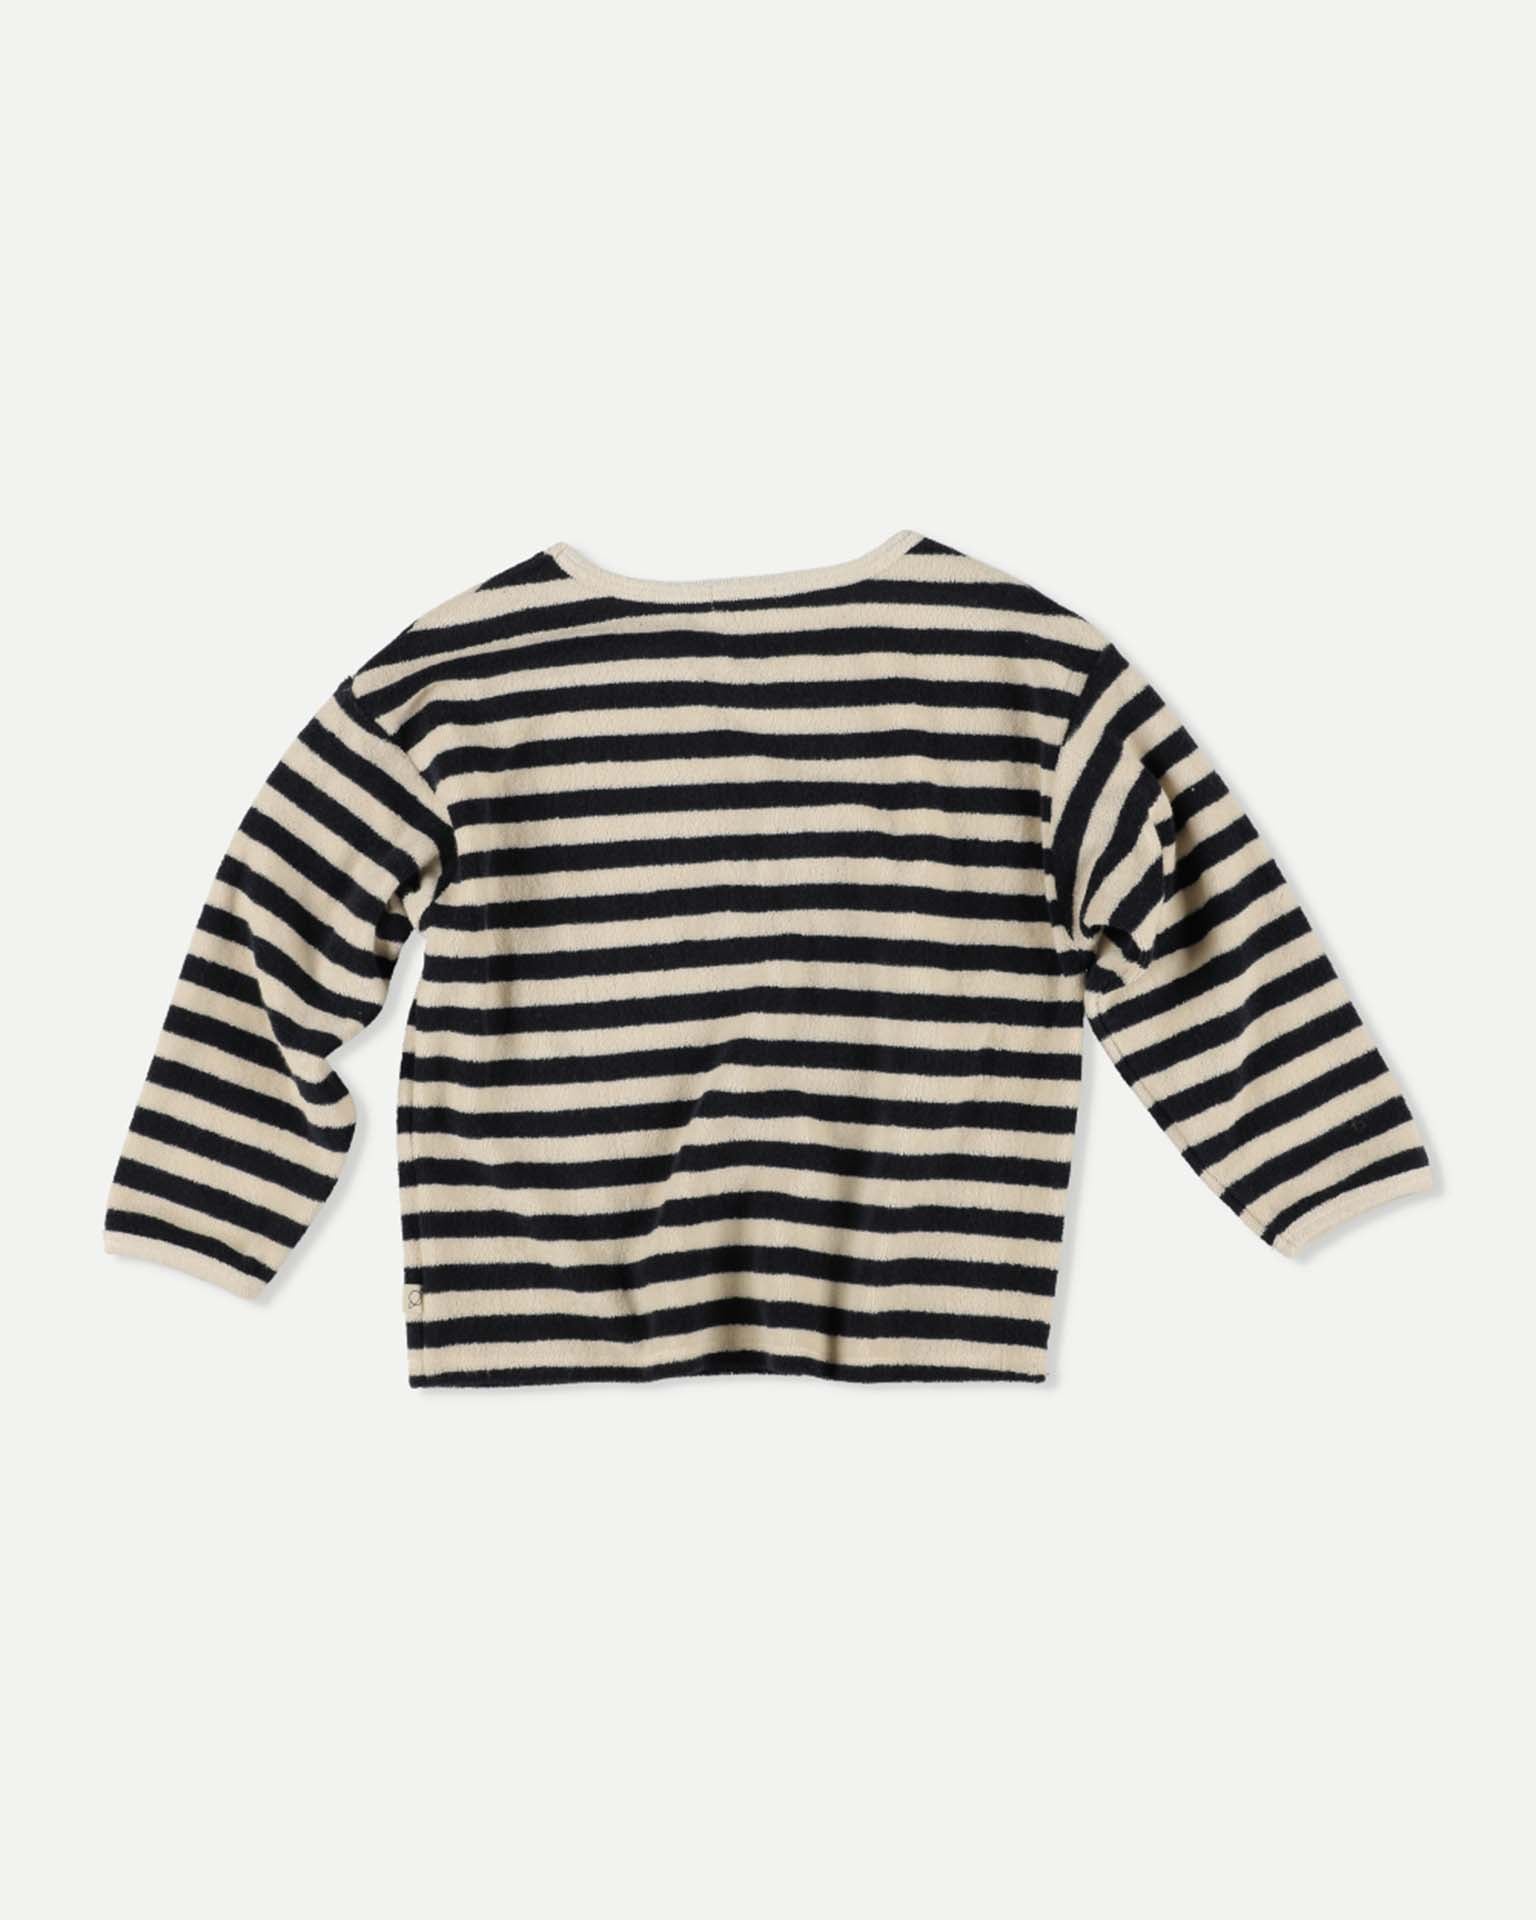 Little my little cozmo kids gael sweatshirt in navy stripes